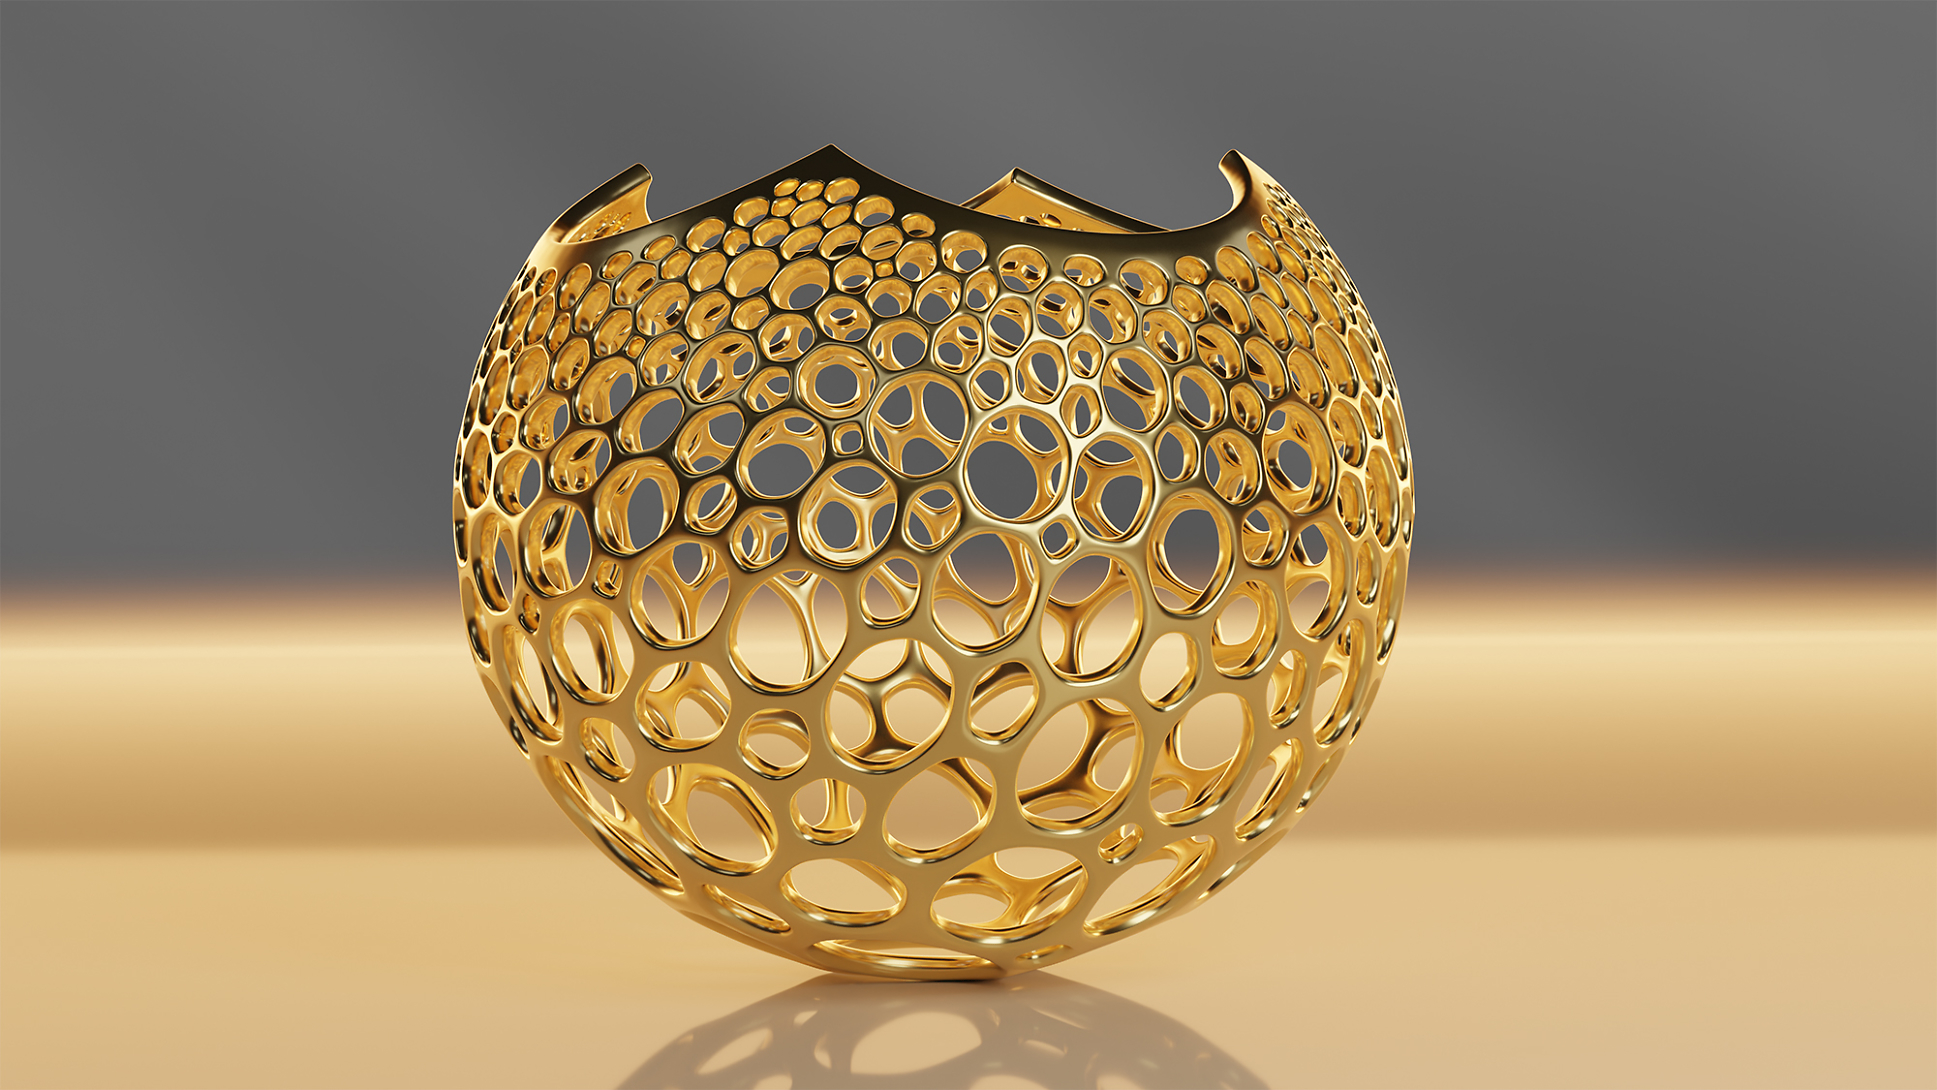 Stereographic Voronoi Sphere